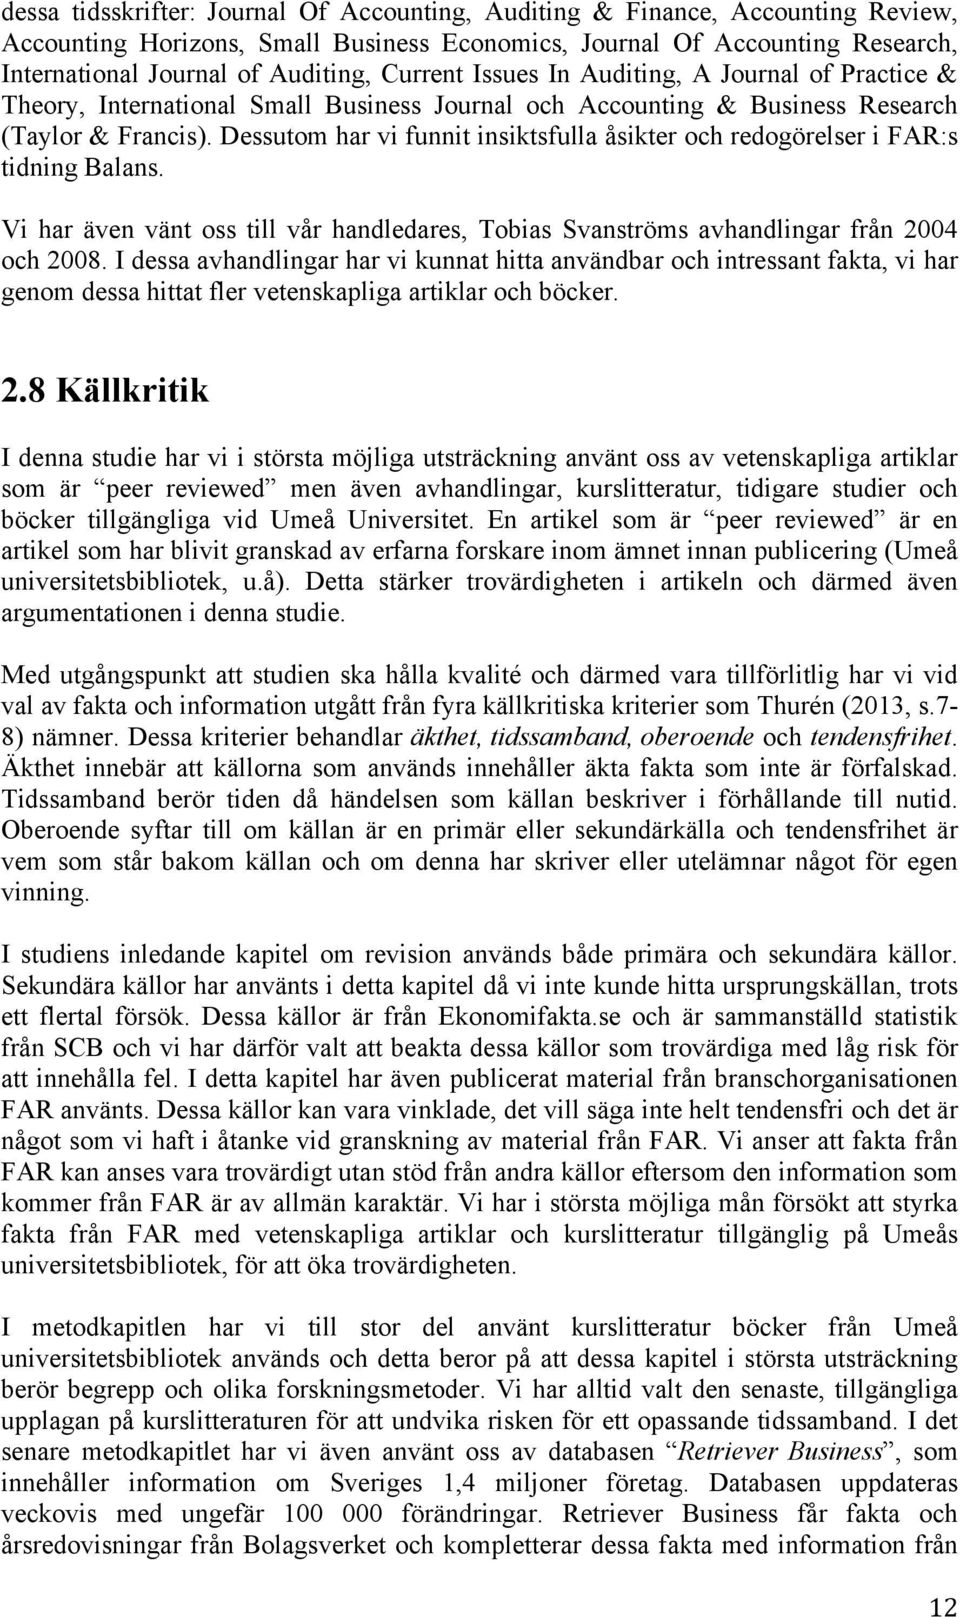 Dessutom har vi funnit insiktsfulla åsikter och redogörelser i FAR:s tidning Balans. Vi har även vänt oss till vår handledares, Tobias Svanströms avhandlingar från 2004 och 2008.